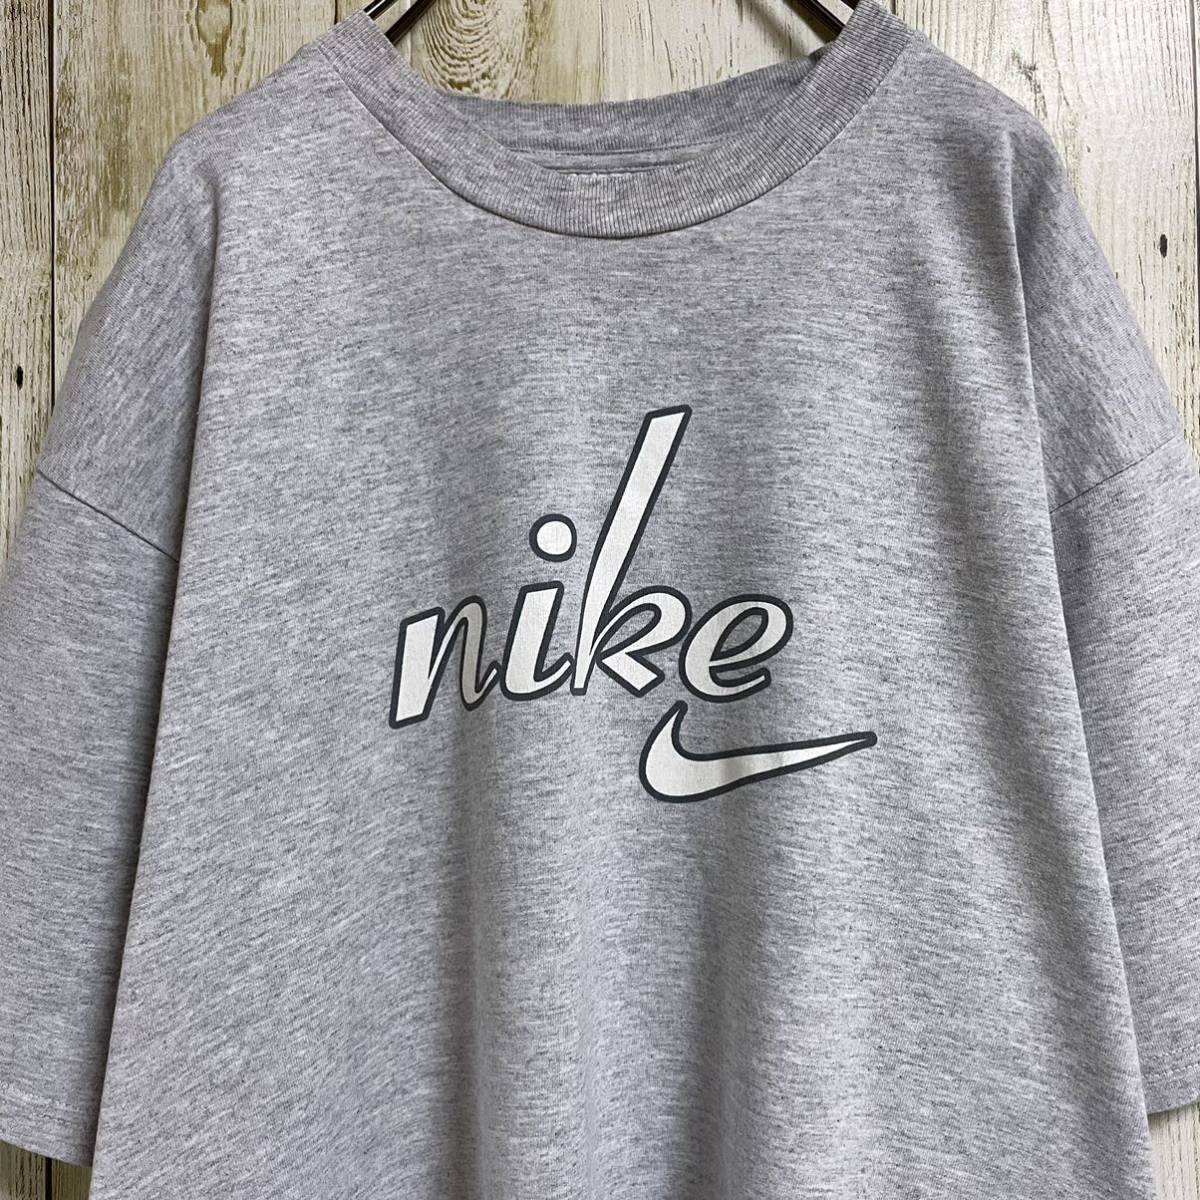 【90s】NIKE ナイキ ビッグプリント 筆記体ロゴ スウッシュ 白タグ 銀タグ ビッグシルエット 半袖 Tシャツ Lサイズ相当 霜降りグレー 古着